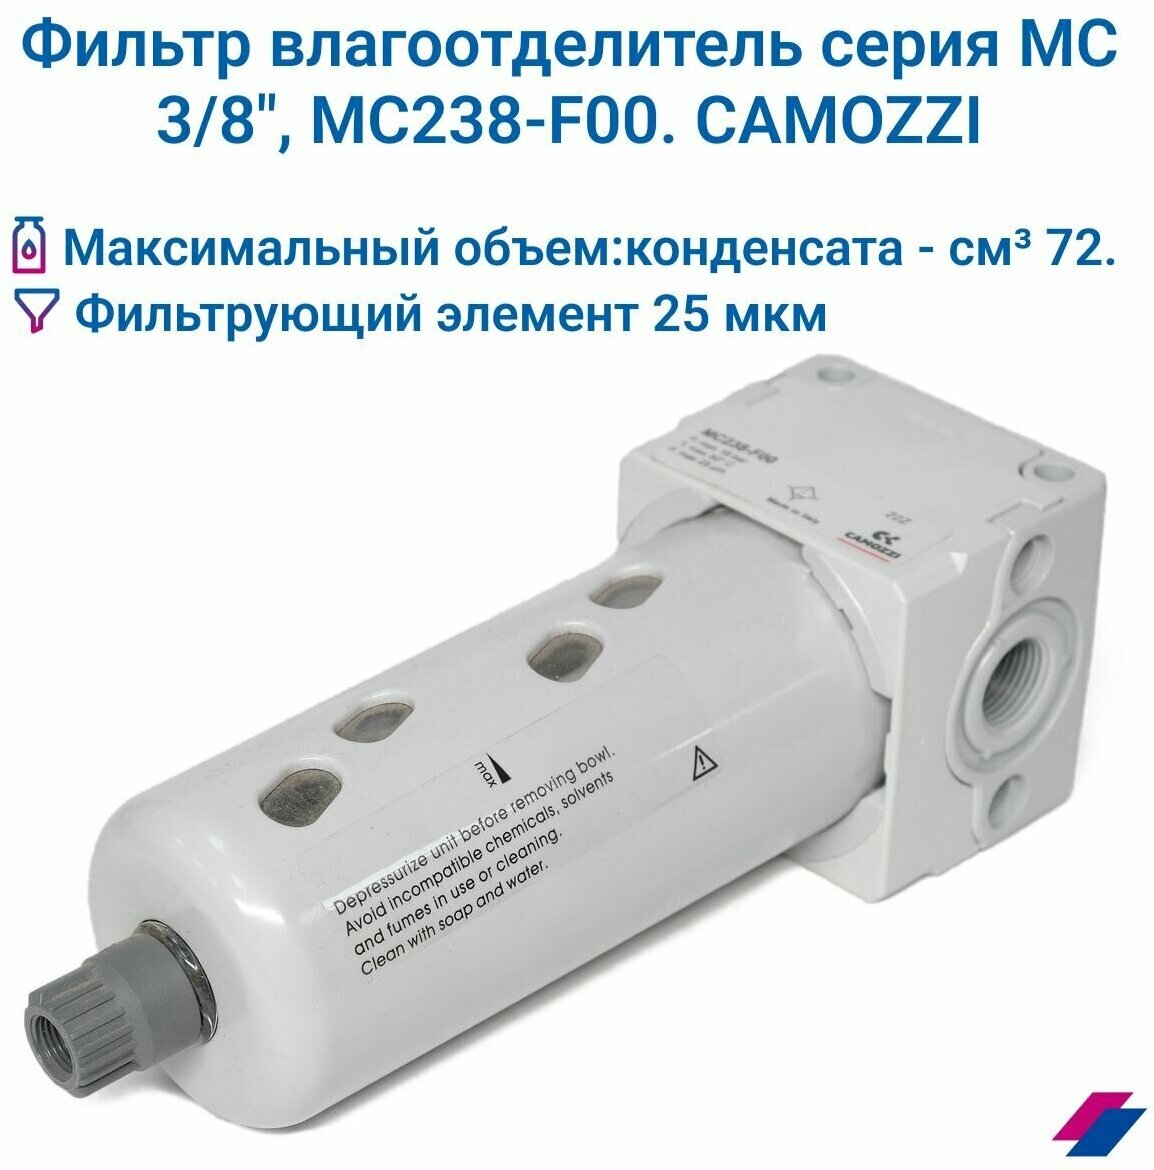 Фильтр влагоотделитель 3/8" 25 мкм MC238-F00 CAMOZZI